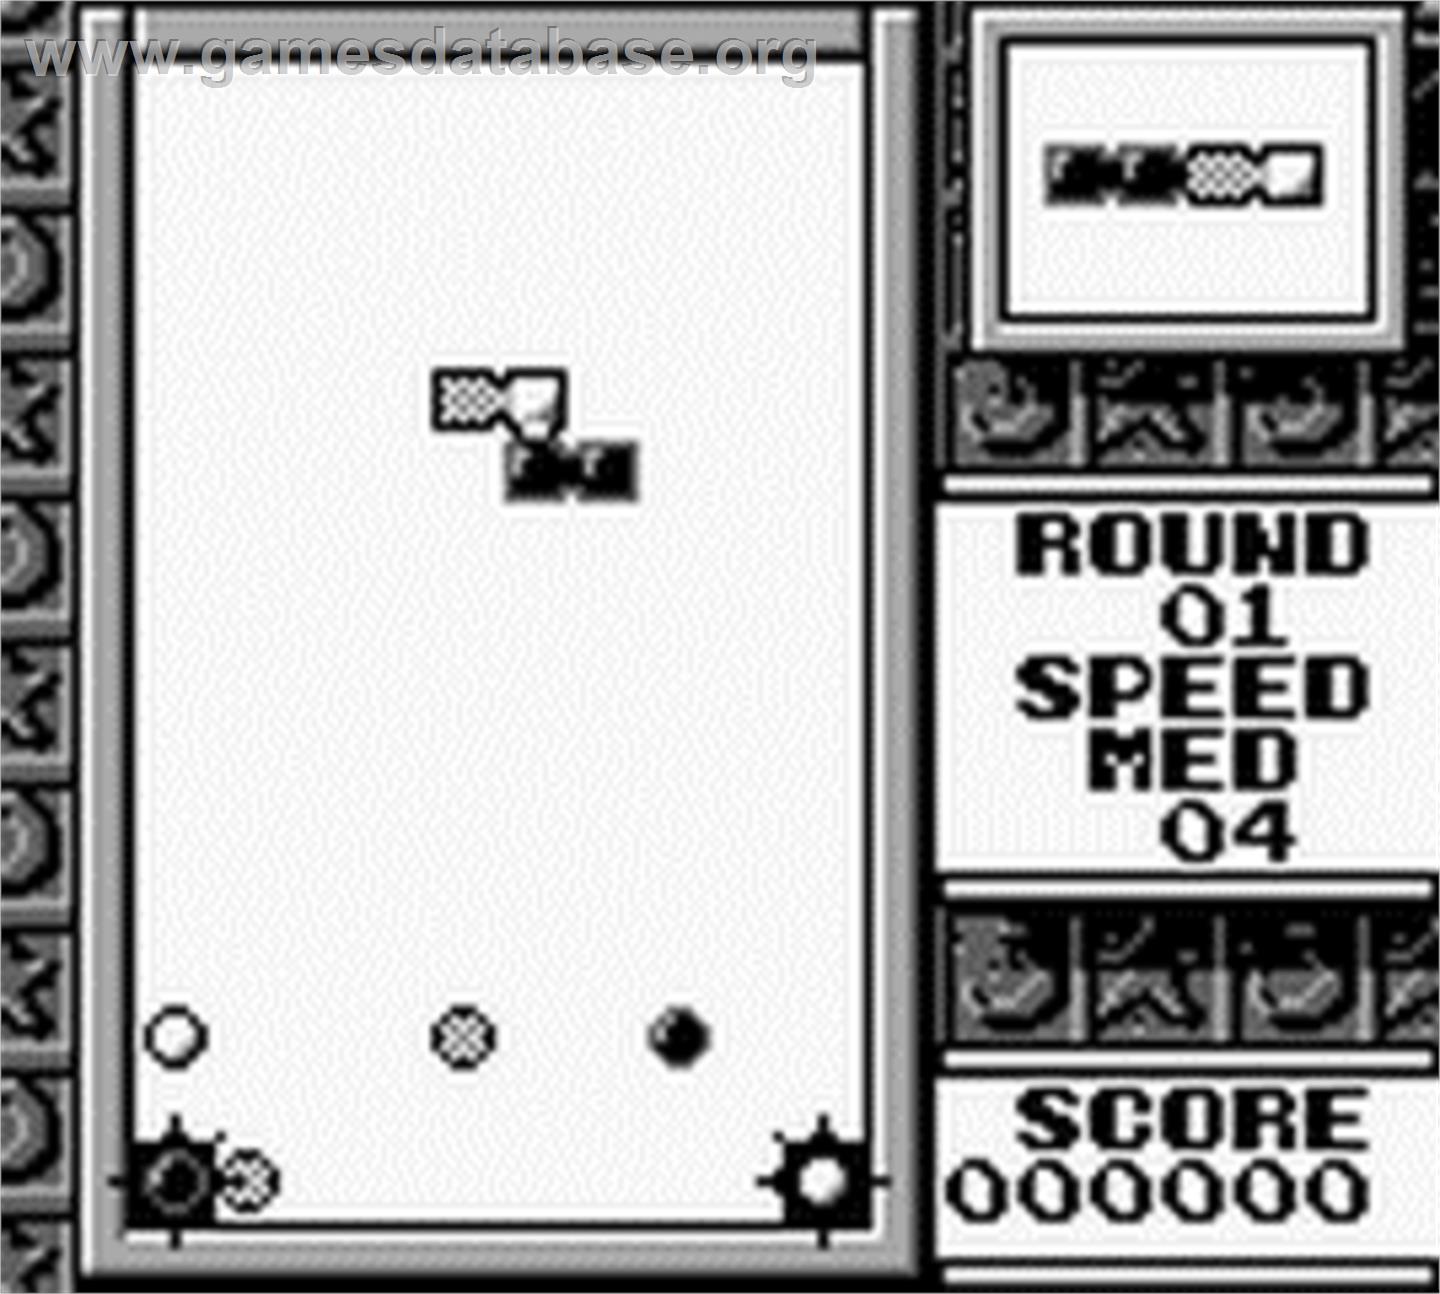 Tetris Flash - Nintendo Game Boy - Artwork - In Game